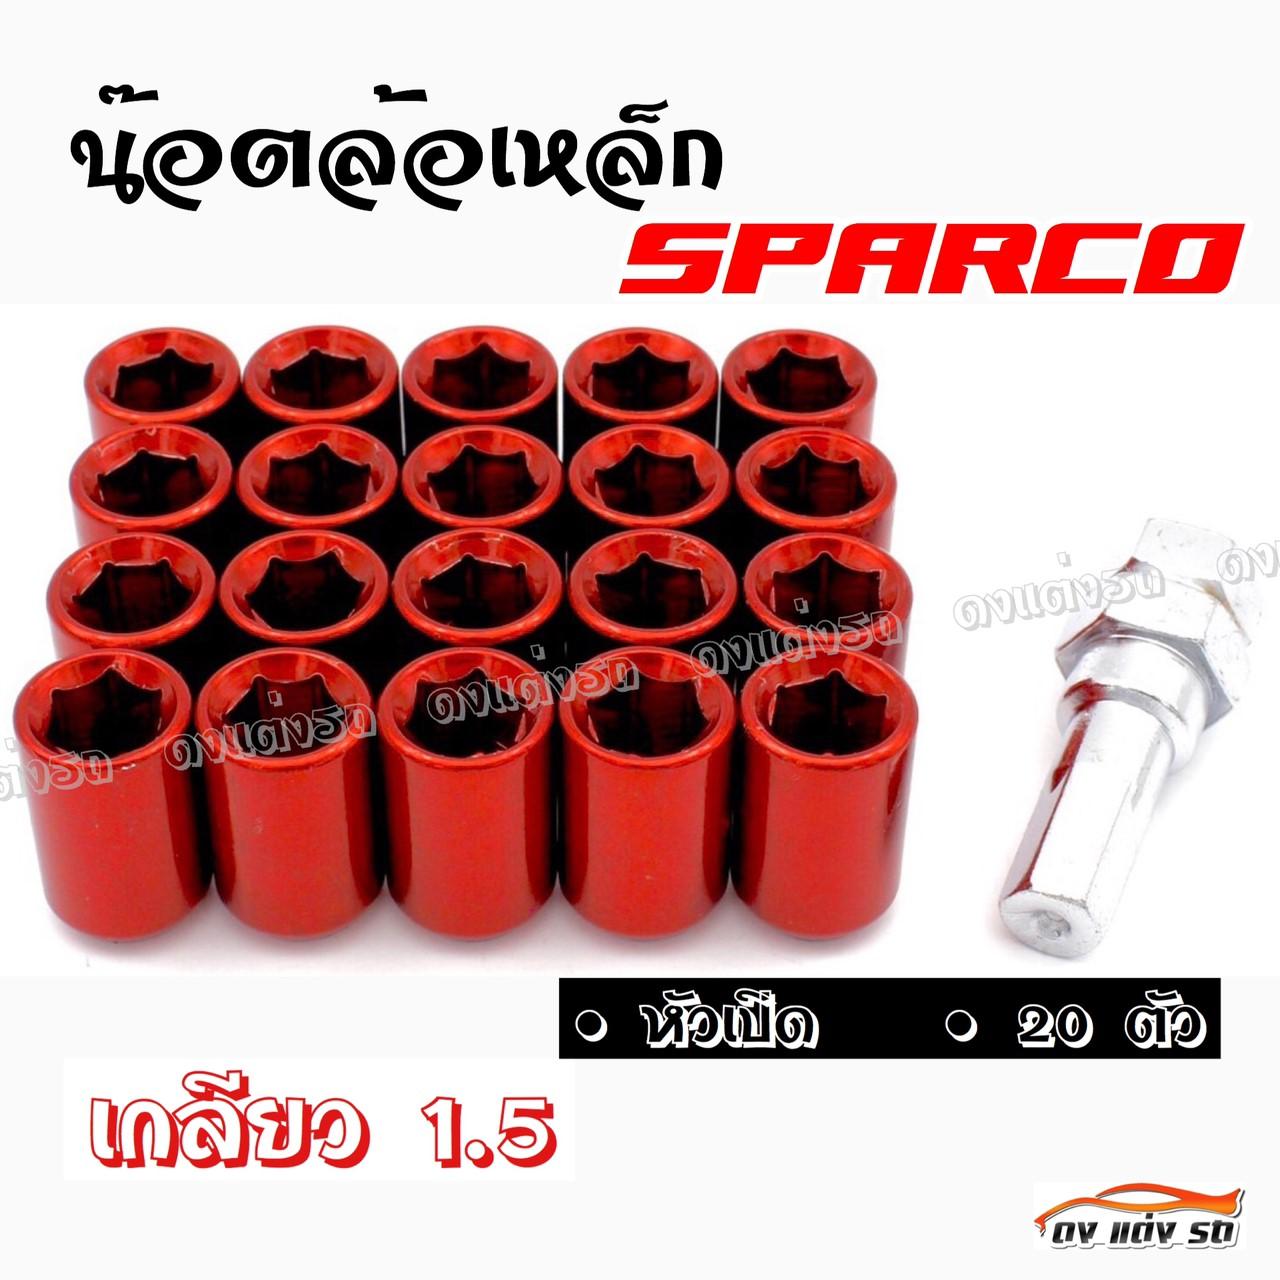 ดงแต่งรถ น๊อตล้อเหล็ก #หัวเปิด  SPARCO  เกลียว 1.5 / ++ 1 ชุด มี 20 ตัว ++ **สีแดง**